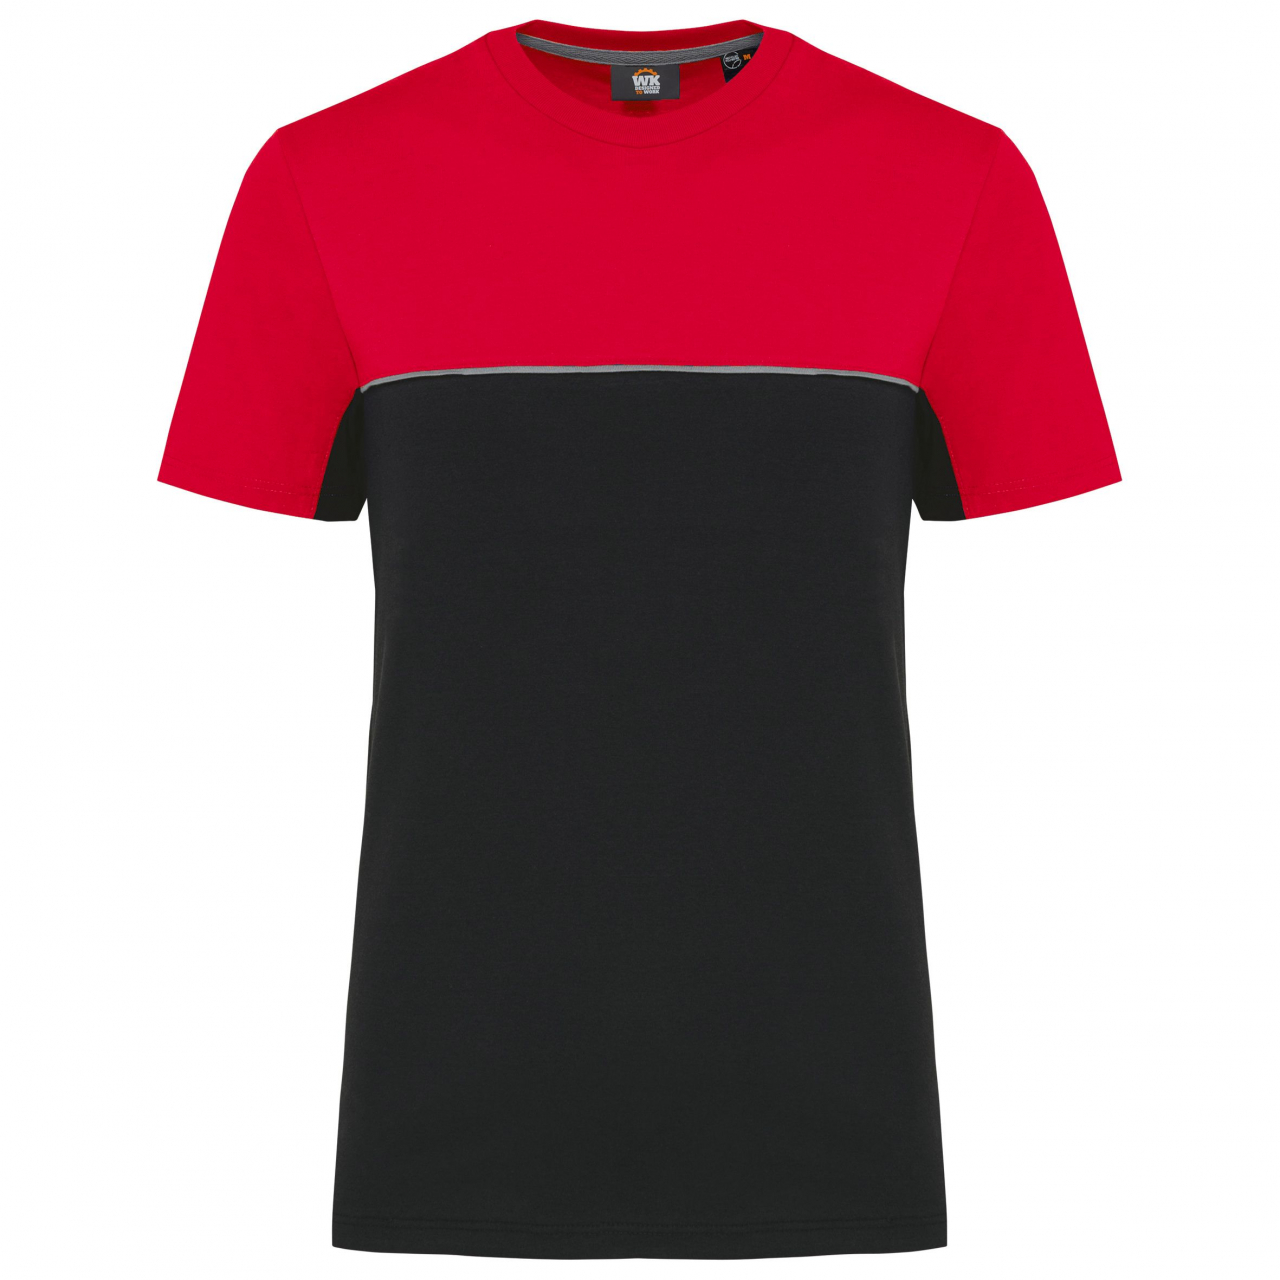 Pracovní triko dvoubarevné WK - černé-červené, 3XL